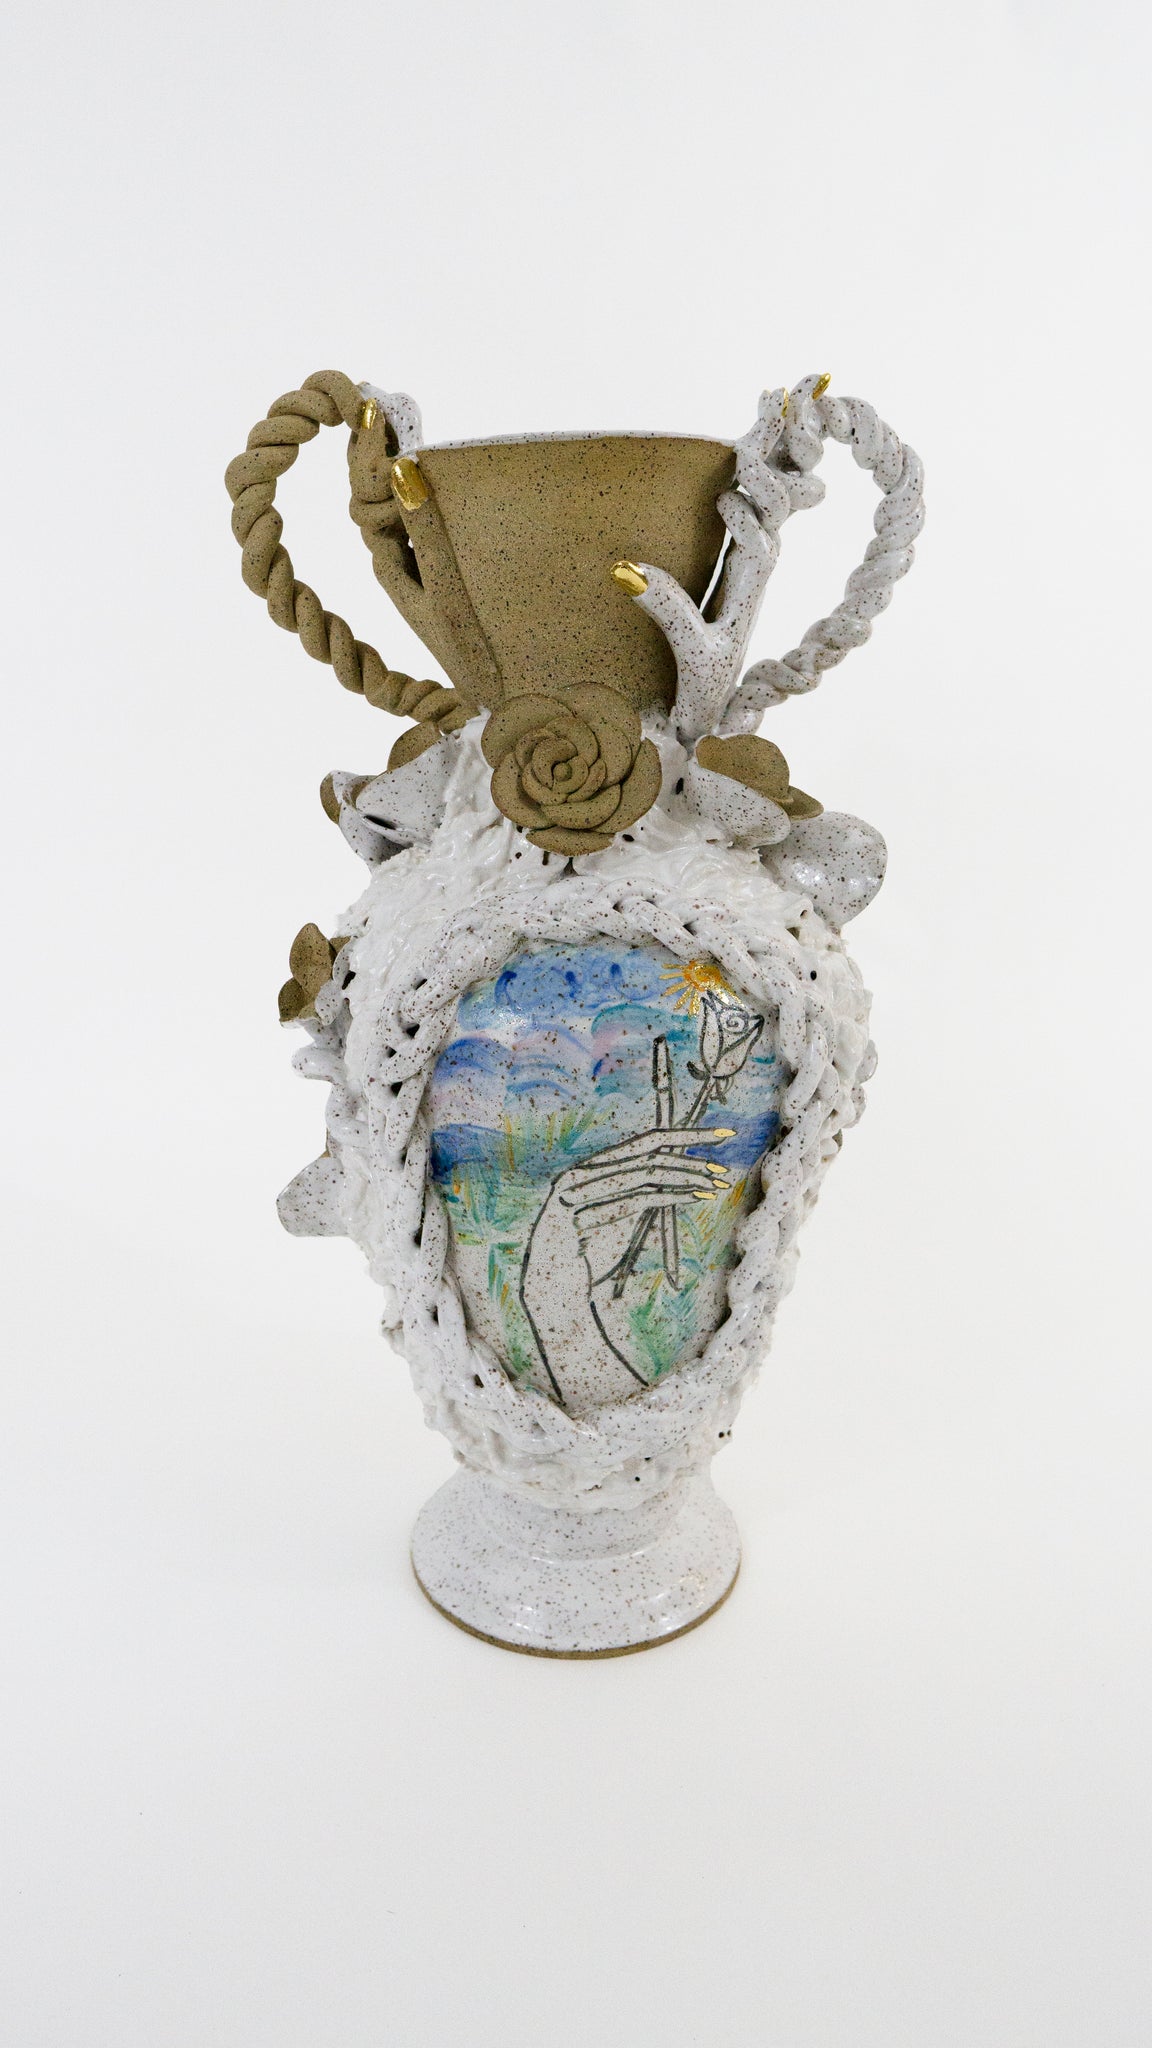 Jen Dwyer, "Chloe's Vase' (Greek goddess of nature/spring)"